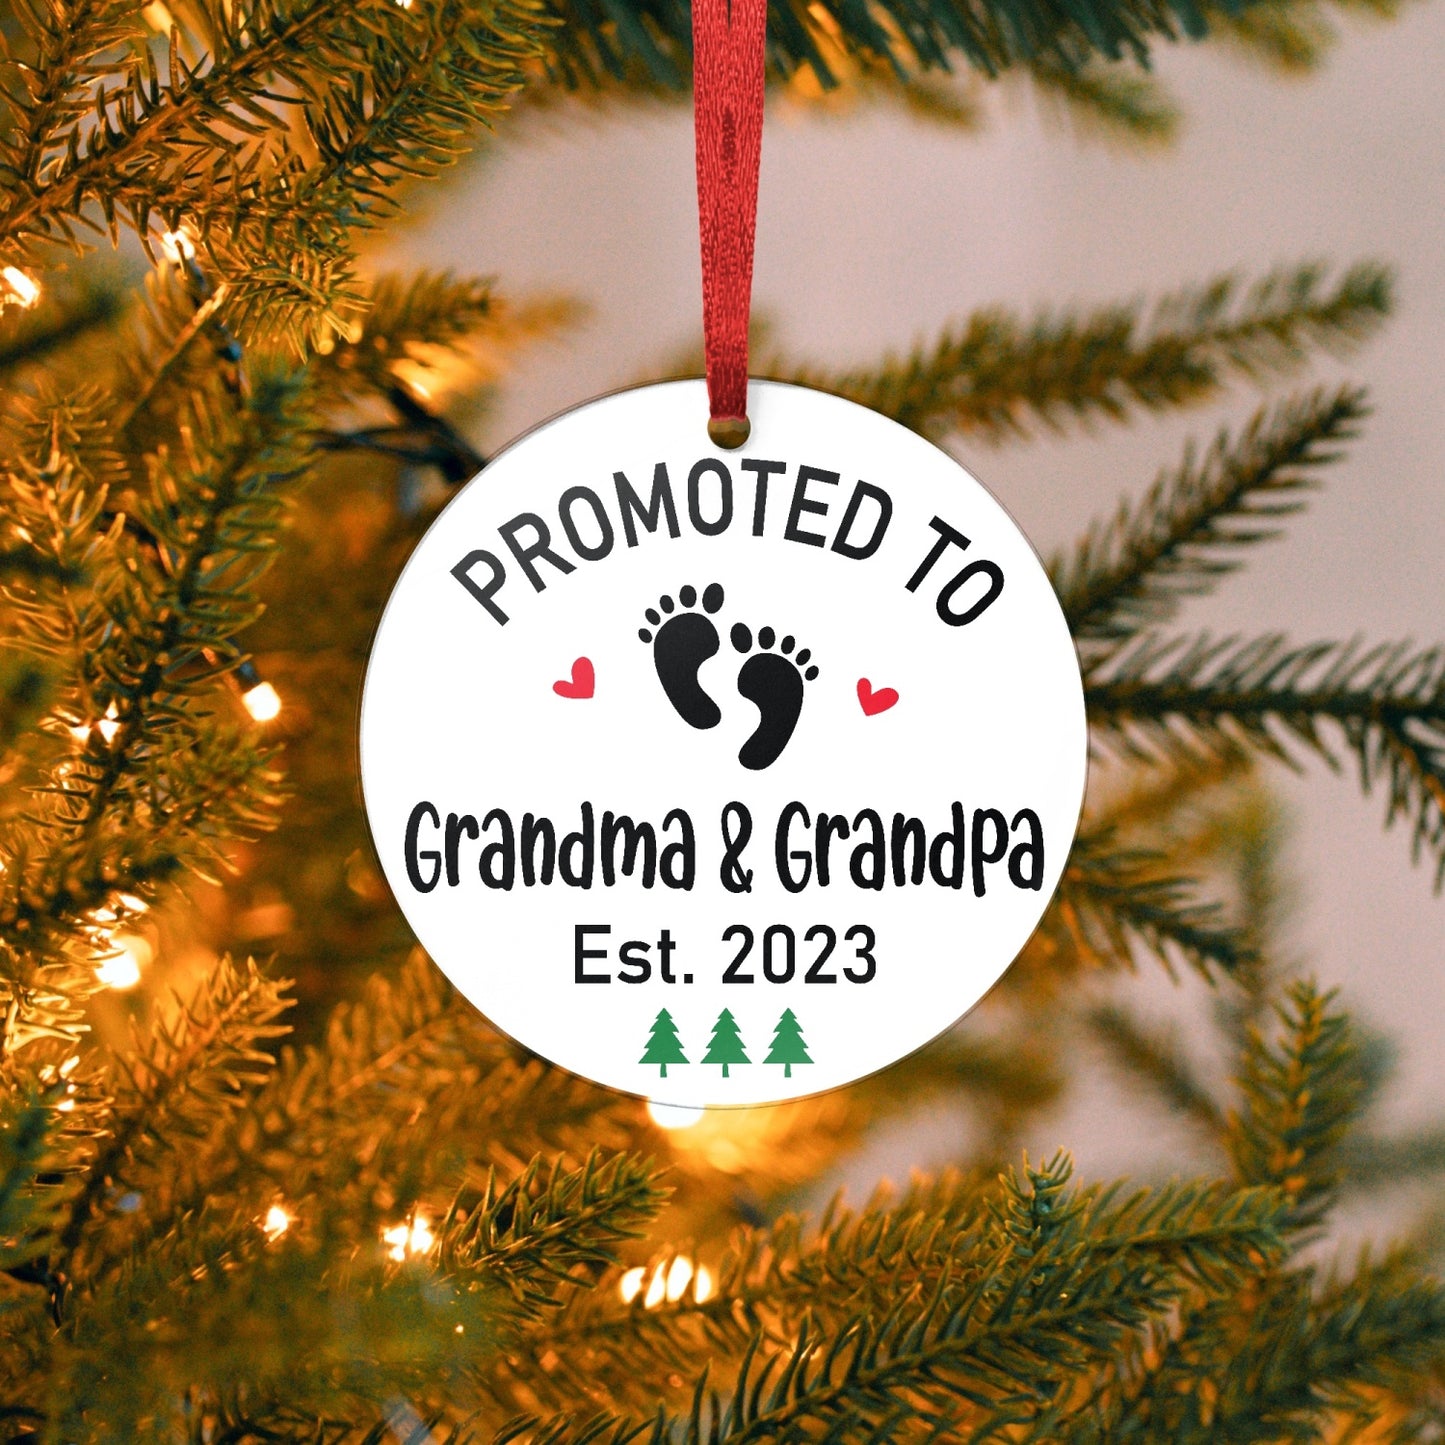 Promoted to Grandma & Grandpa Ornament